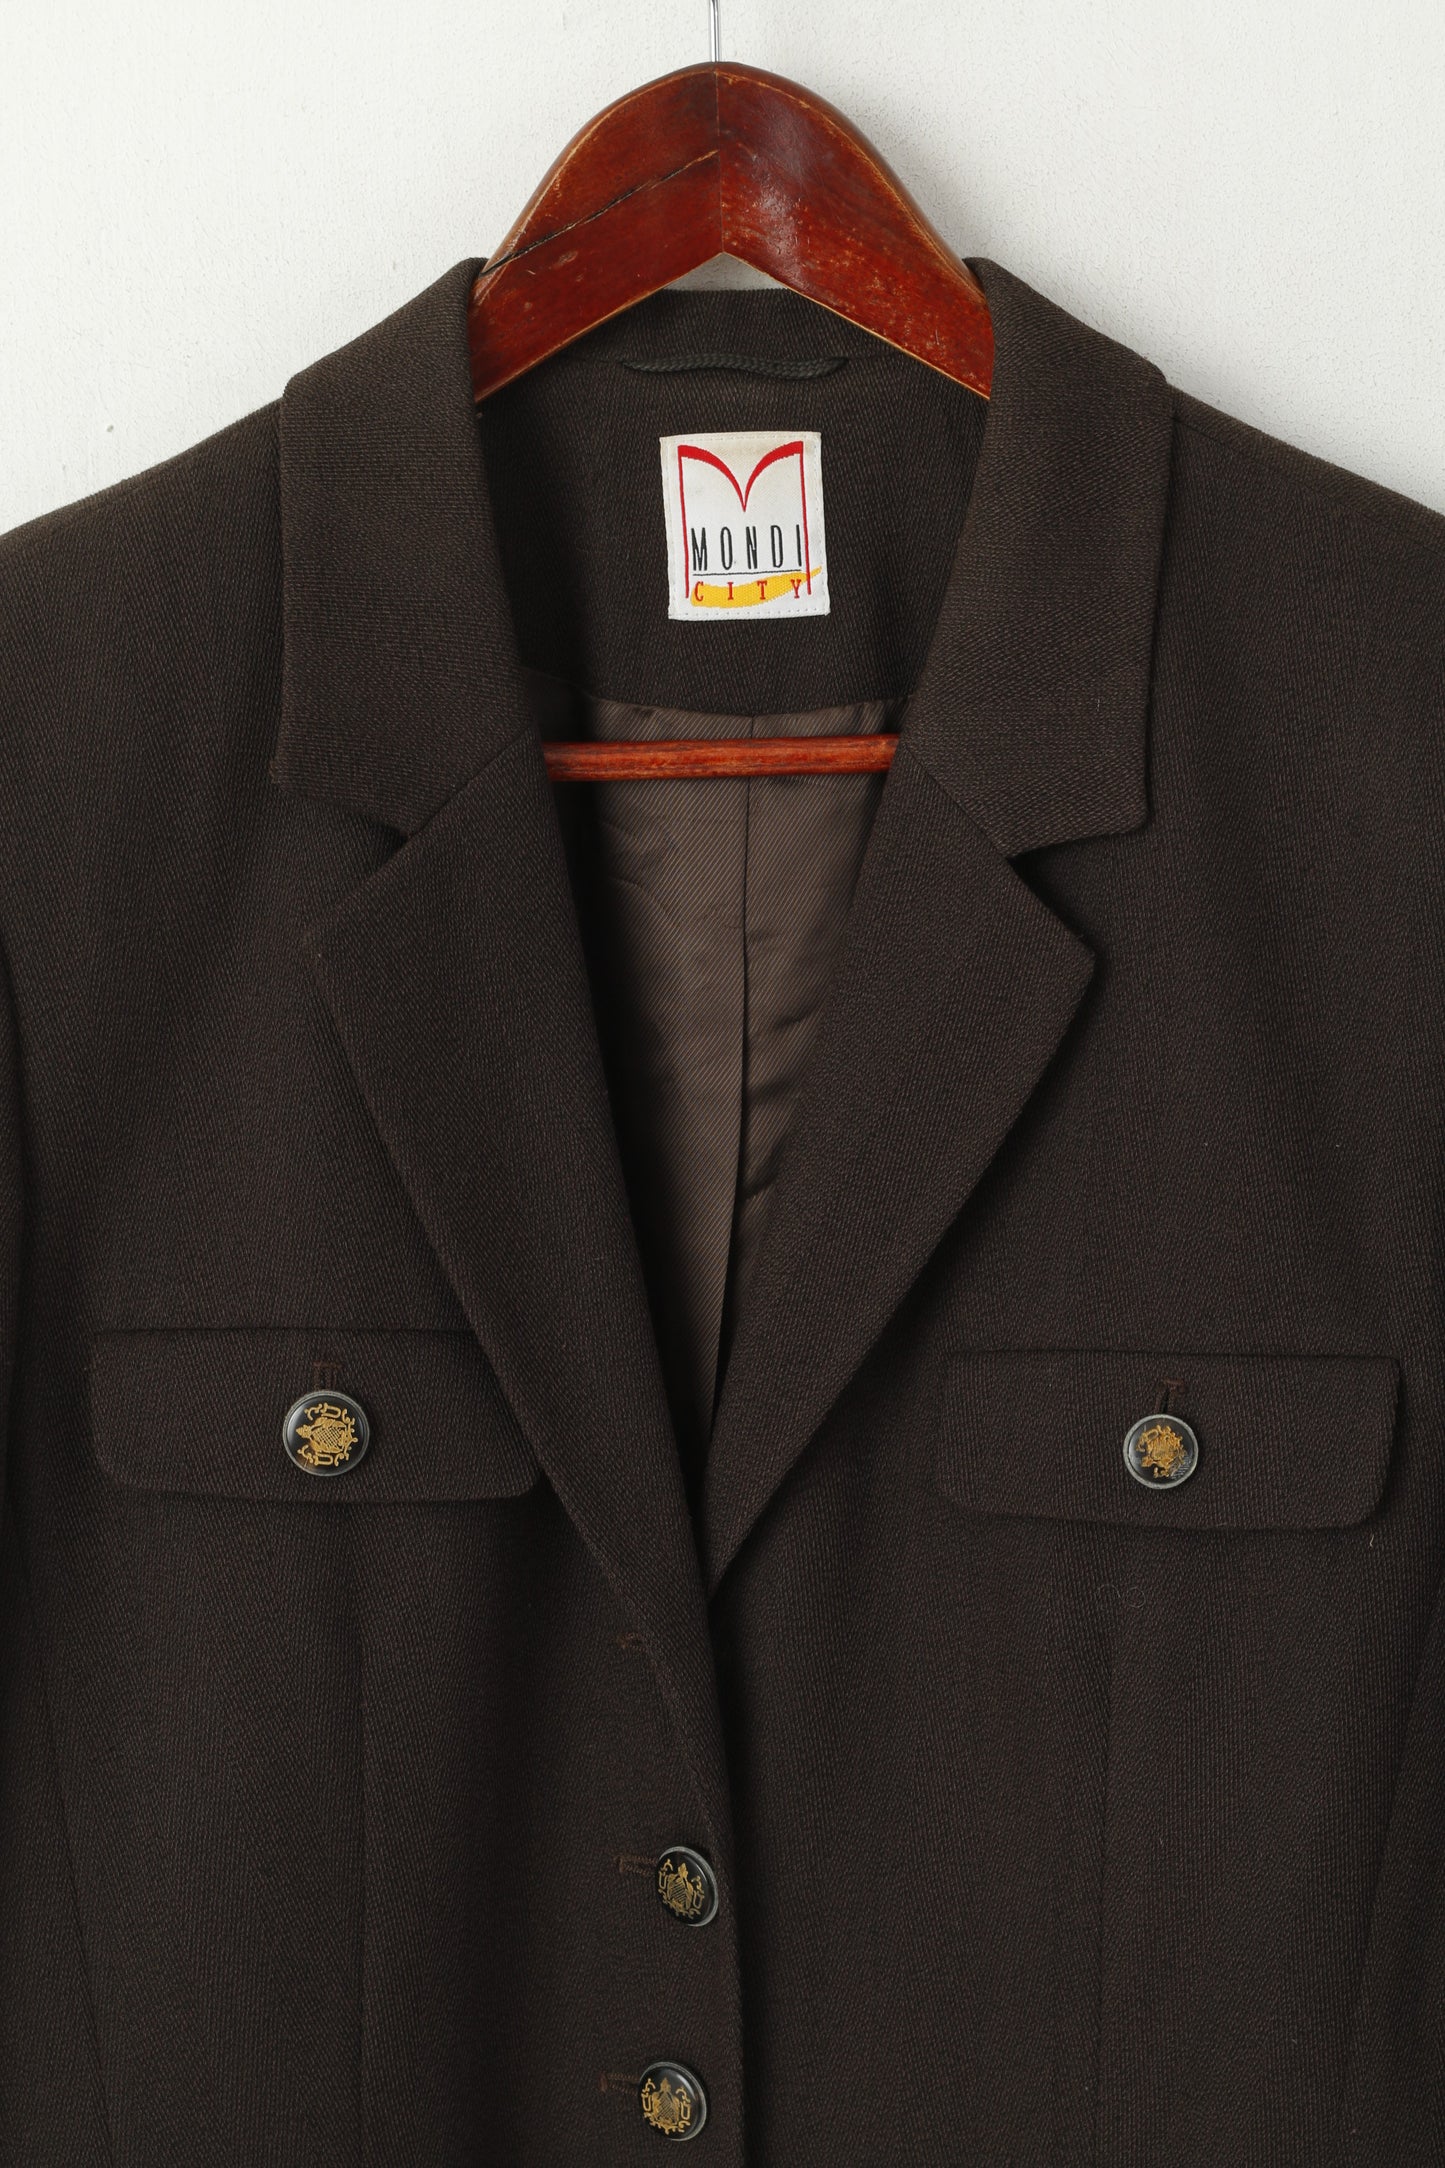 Mondi City Women 38 S Blazer Giacca elegante militare casual in misto lana marrone